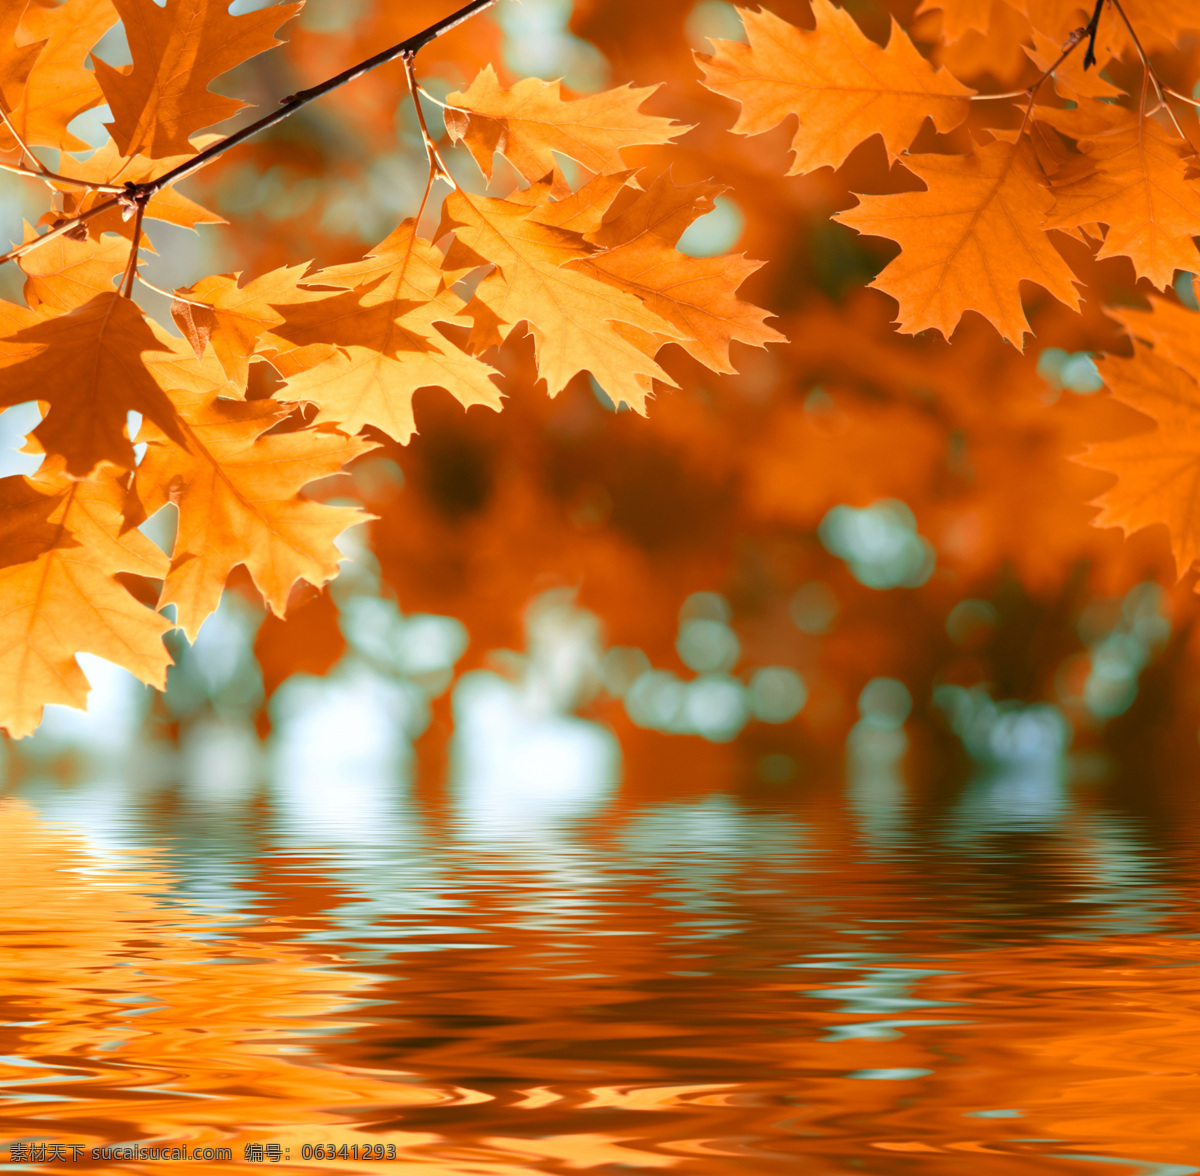 秋天 树叶 秋天的树叶 枫叶 叶子 黄叶 倒影 水面 山水风景 风景图片